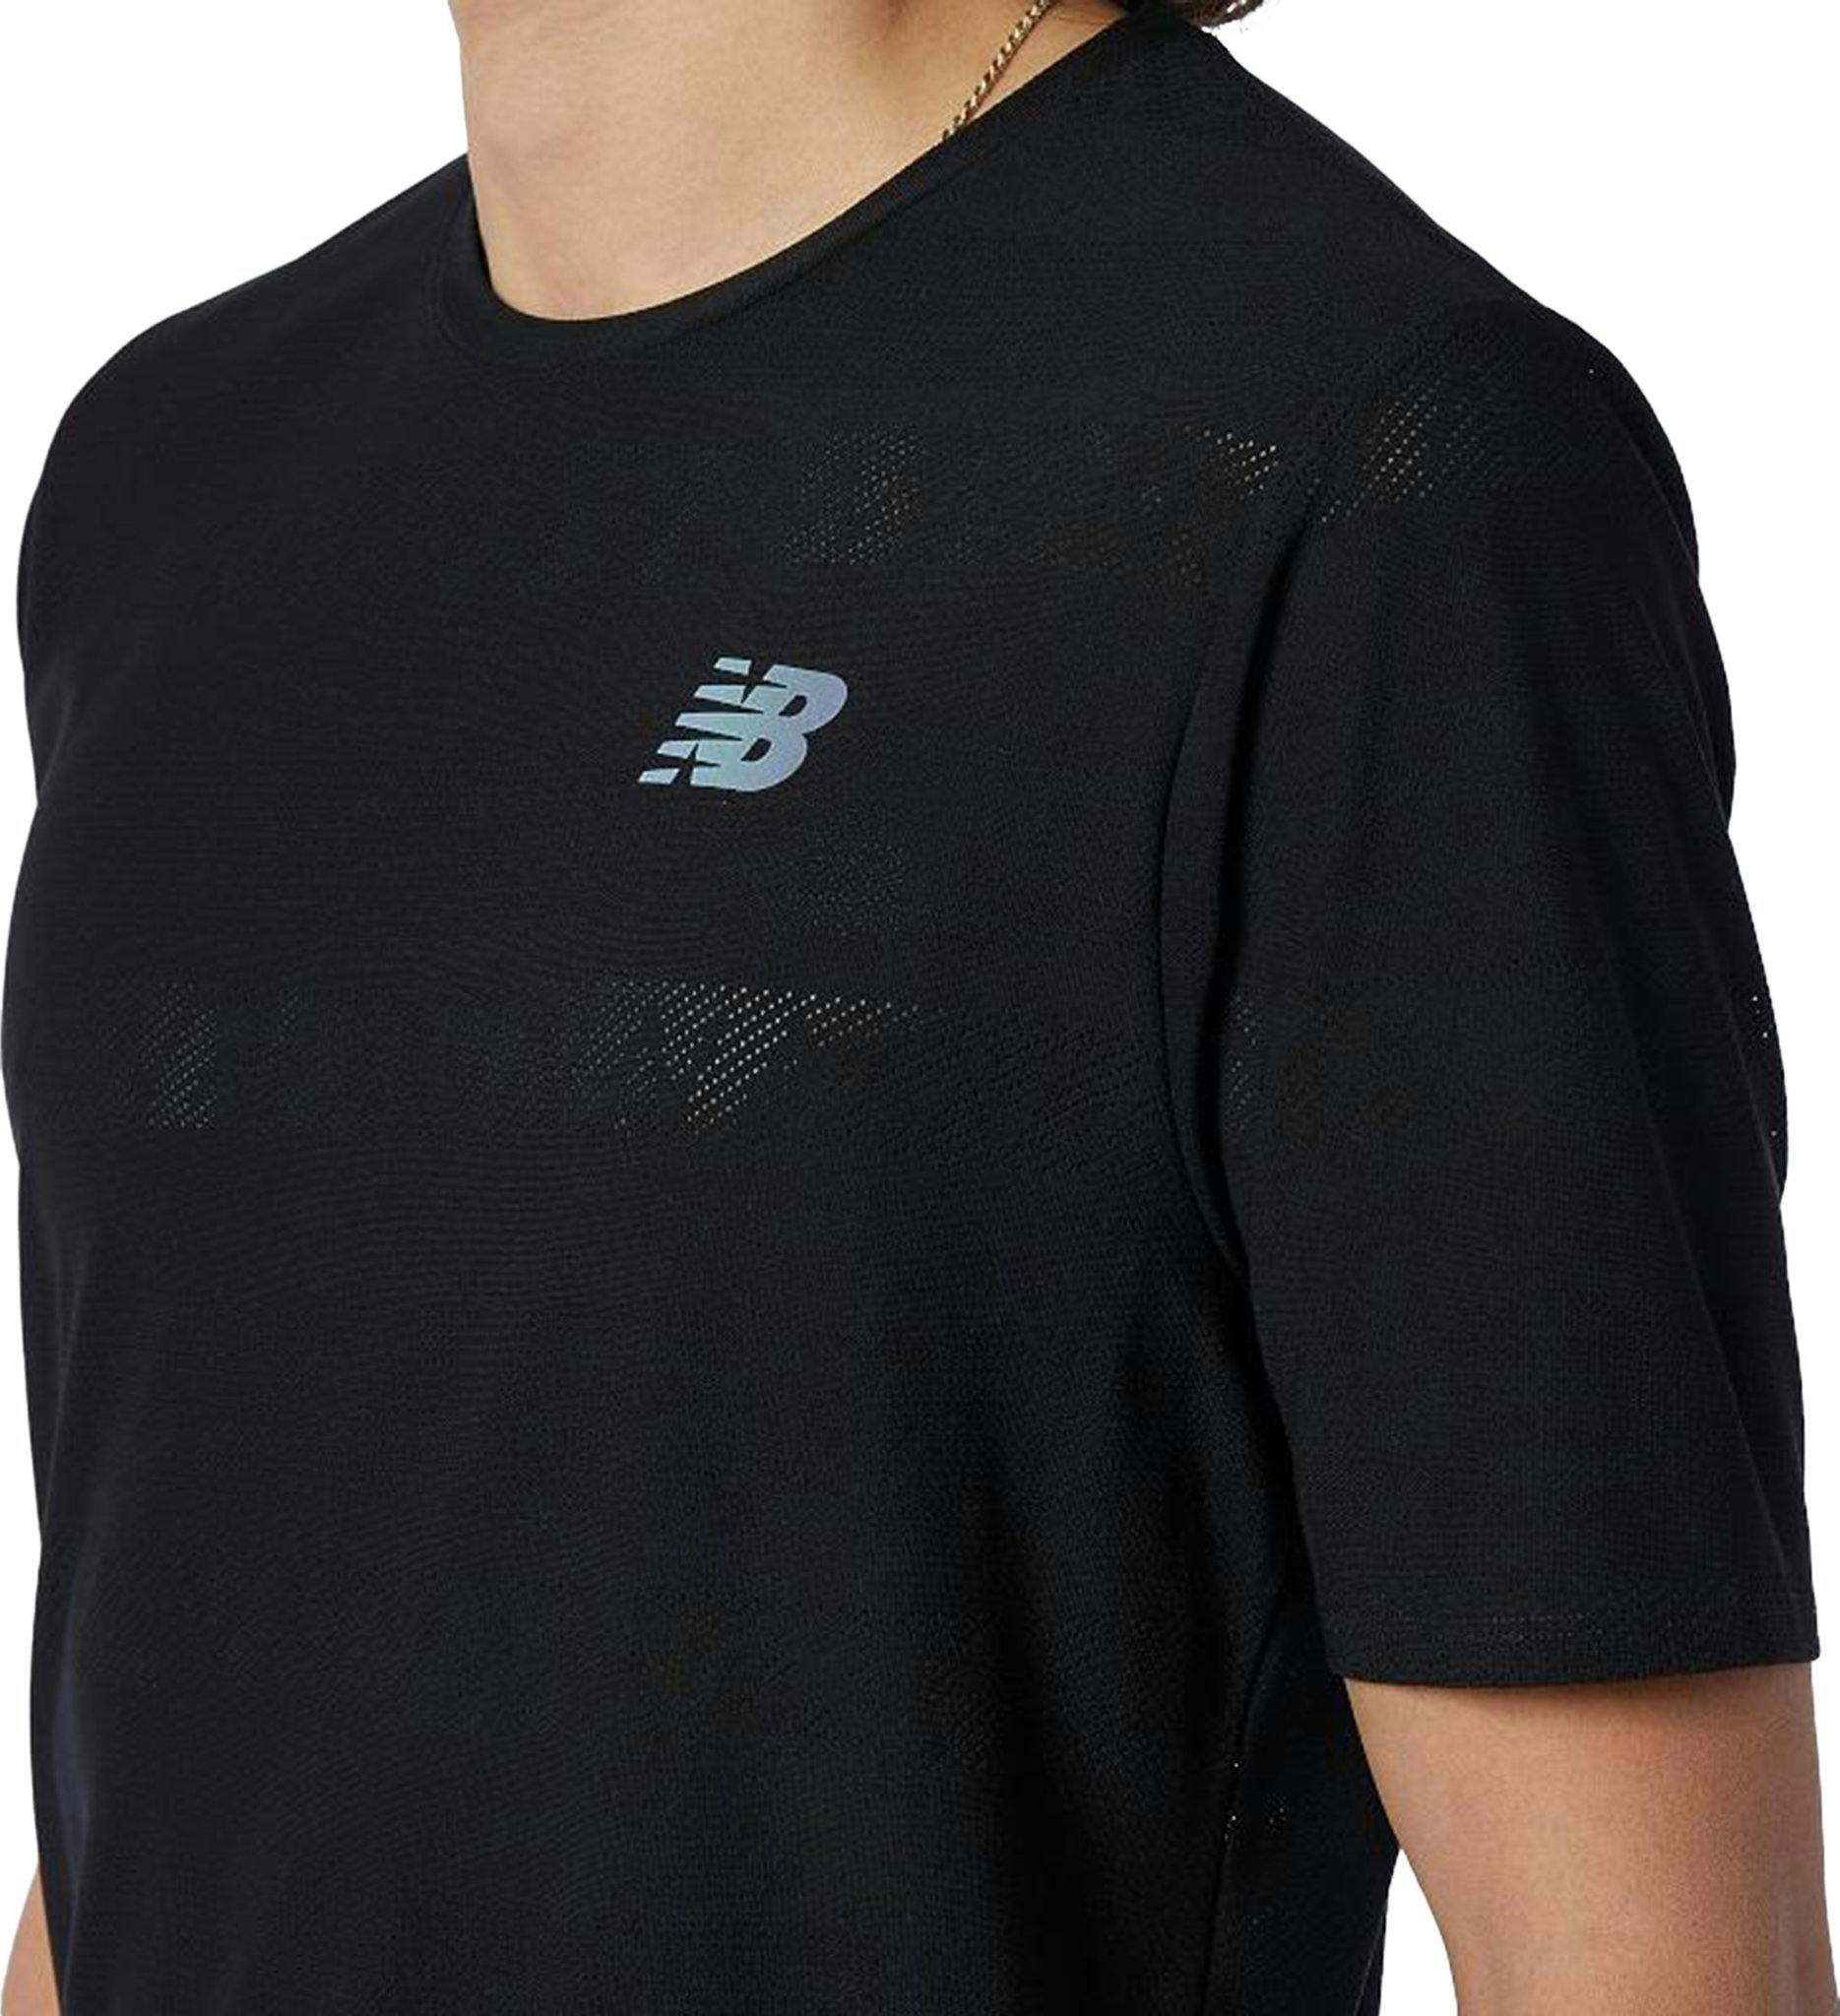 Numéro de l'image de la galerie de produits 6 pour le produit T-shirt à manches courtes Q Speed Jacquard - Homme